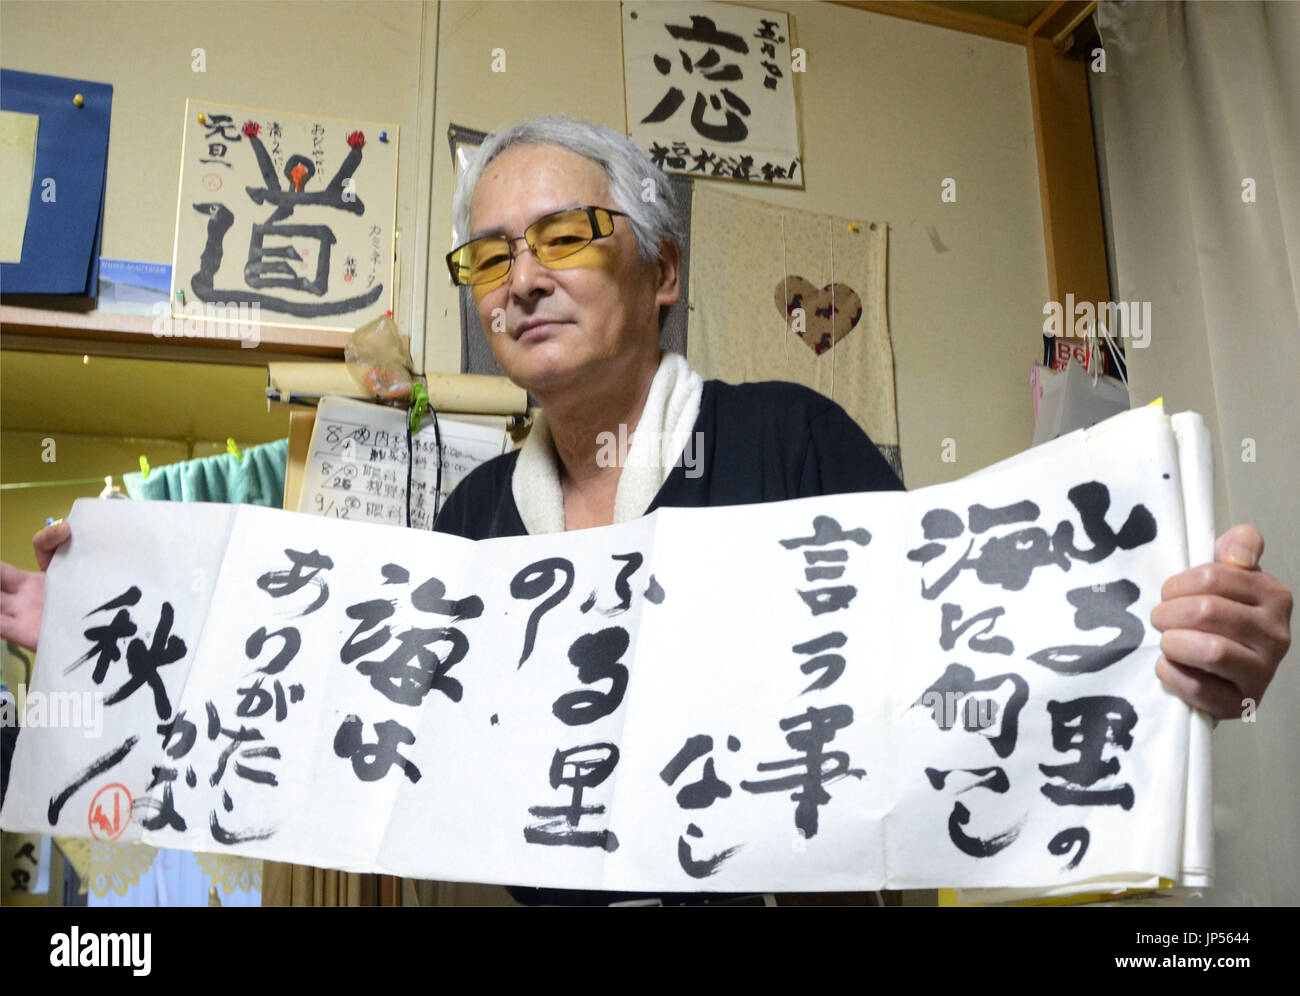 MORIOKA, Japón - Shuetsu Kubo, que tiene la debilidad de la vista, contiene una muestra de su caligrafía en Kamaishi, Prefectura de Iwate, noreste de Japón, el 26 de agosto, 2014. Kubo comenzaron a expresar su gratitud por su familia a través de la caligrafía tras perder a su hermano menor en el 2011 terremoto y maremoto. (Kyodo) Foto de stock